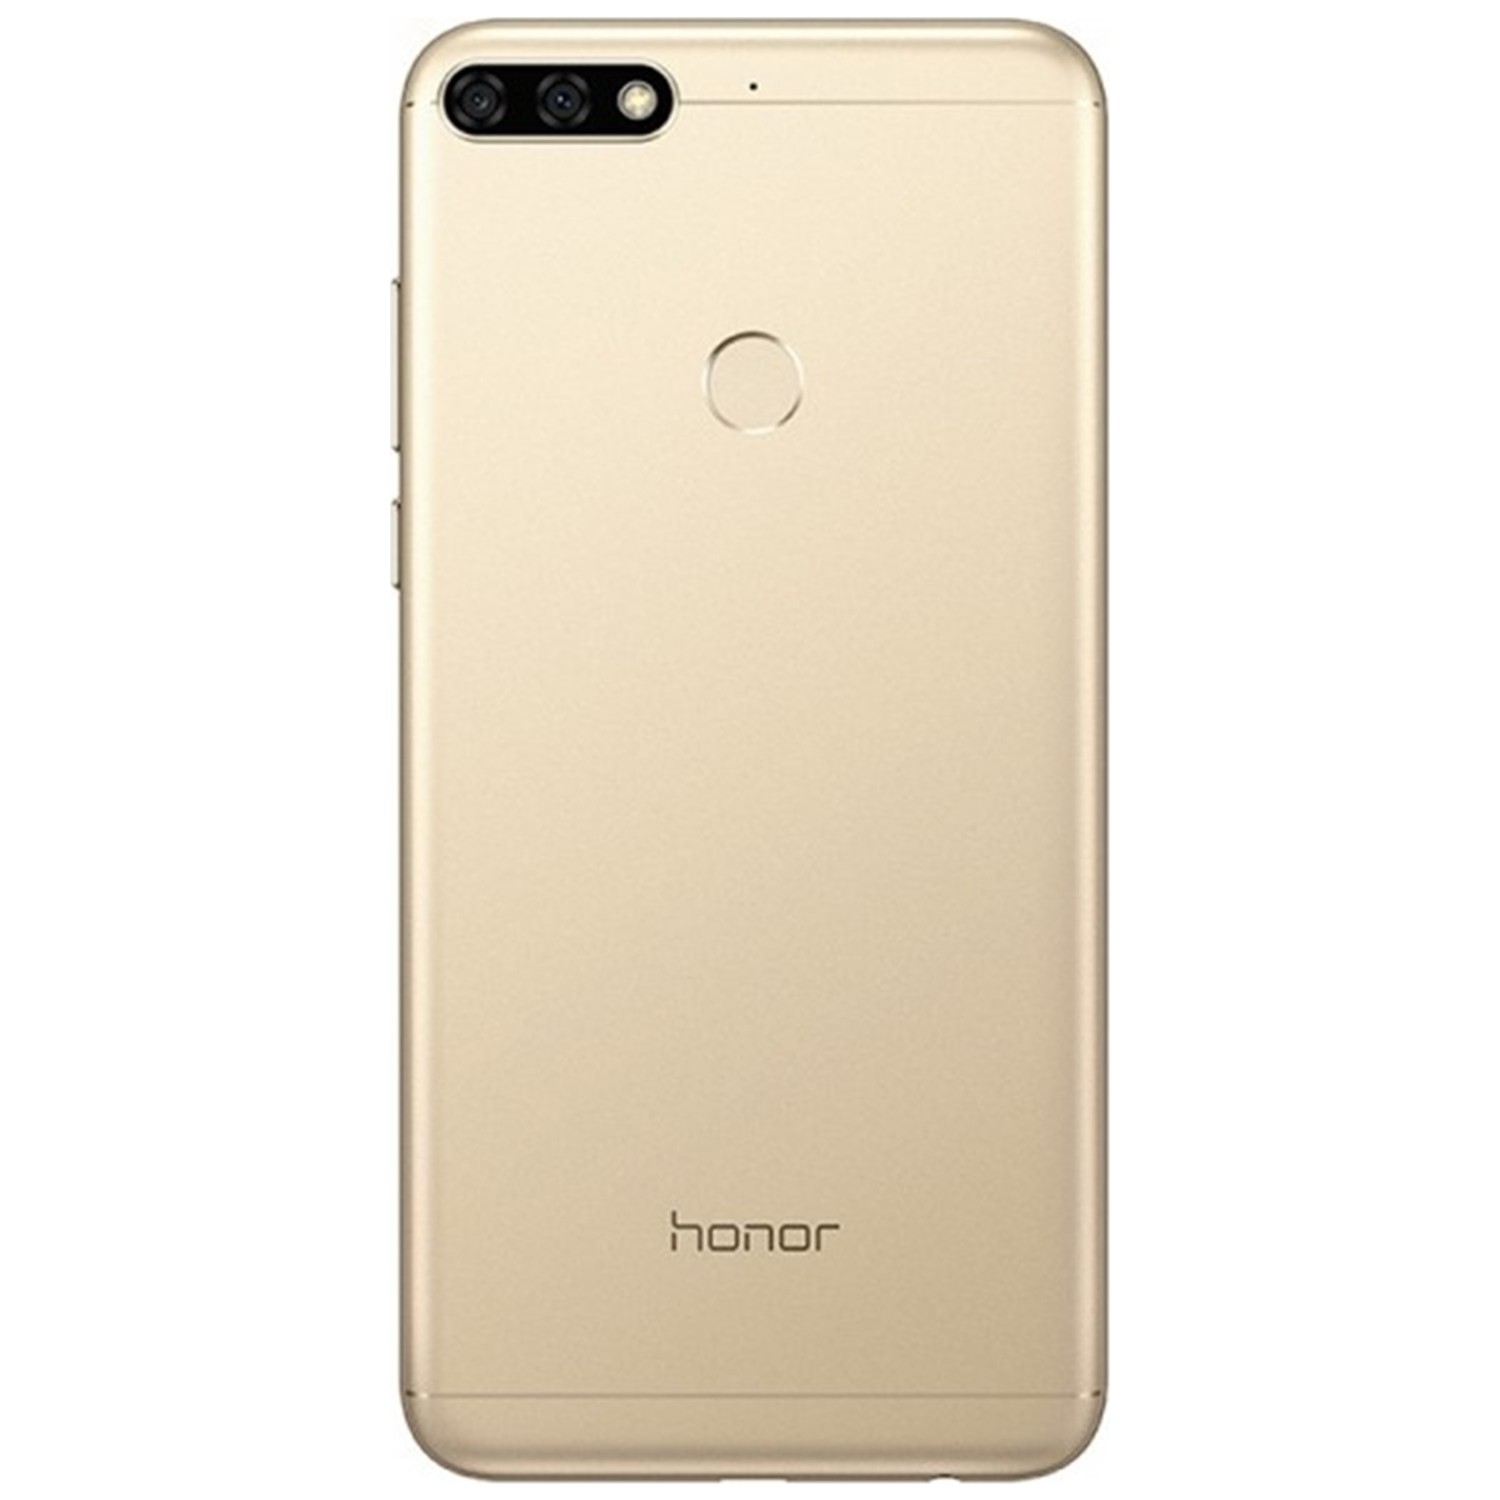 Huawei 3 32. Huawei Honor 7c 32gb. Huawei Honor 7c Pro. Honor 7c 32gb. Смартфон Honor 7c 32gb.